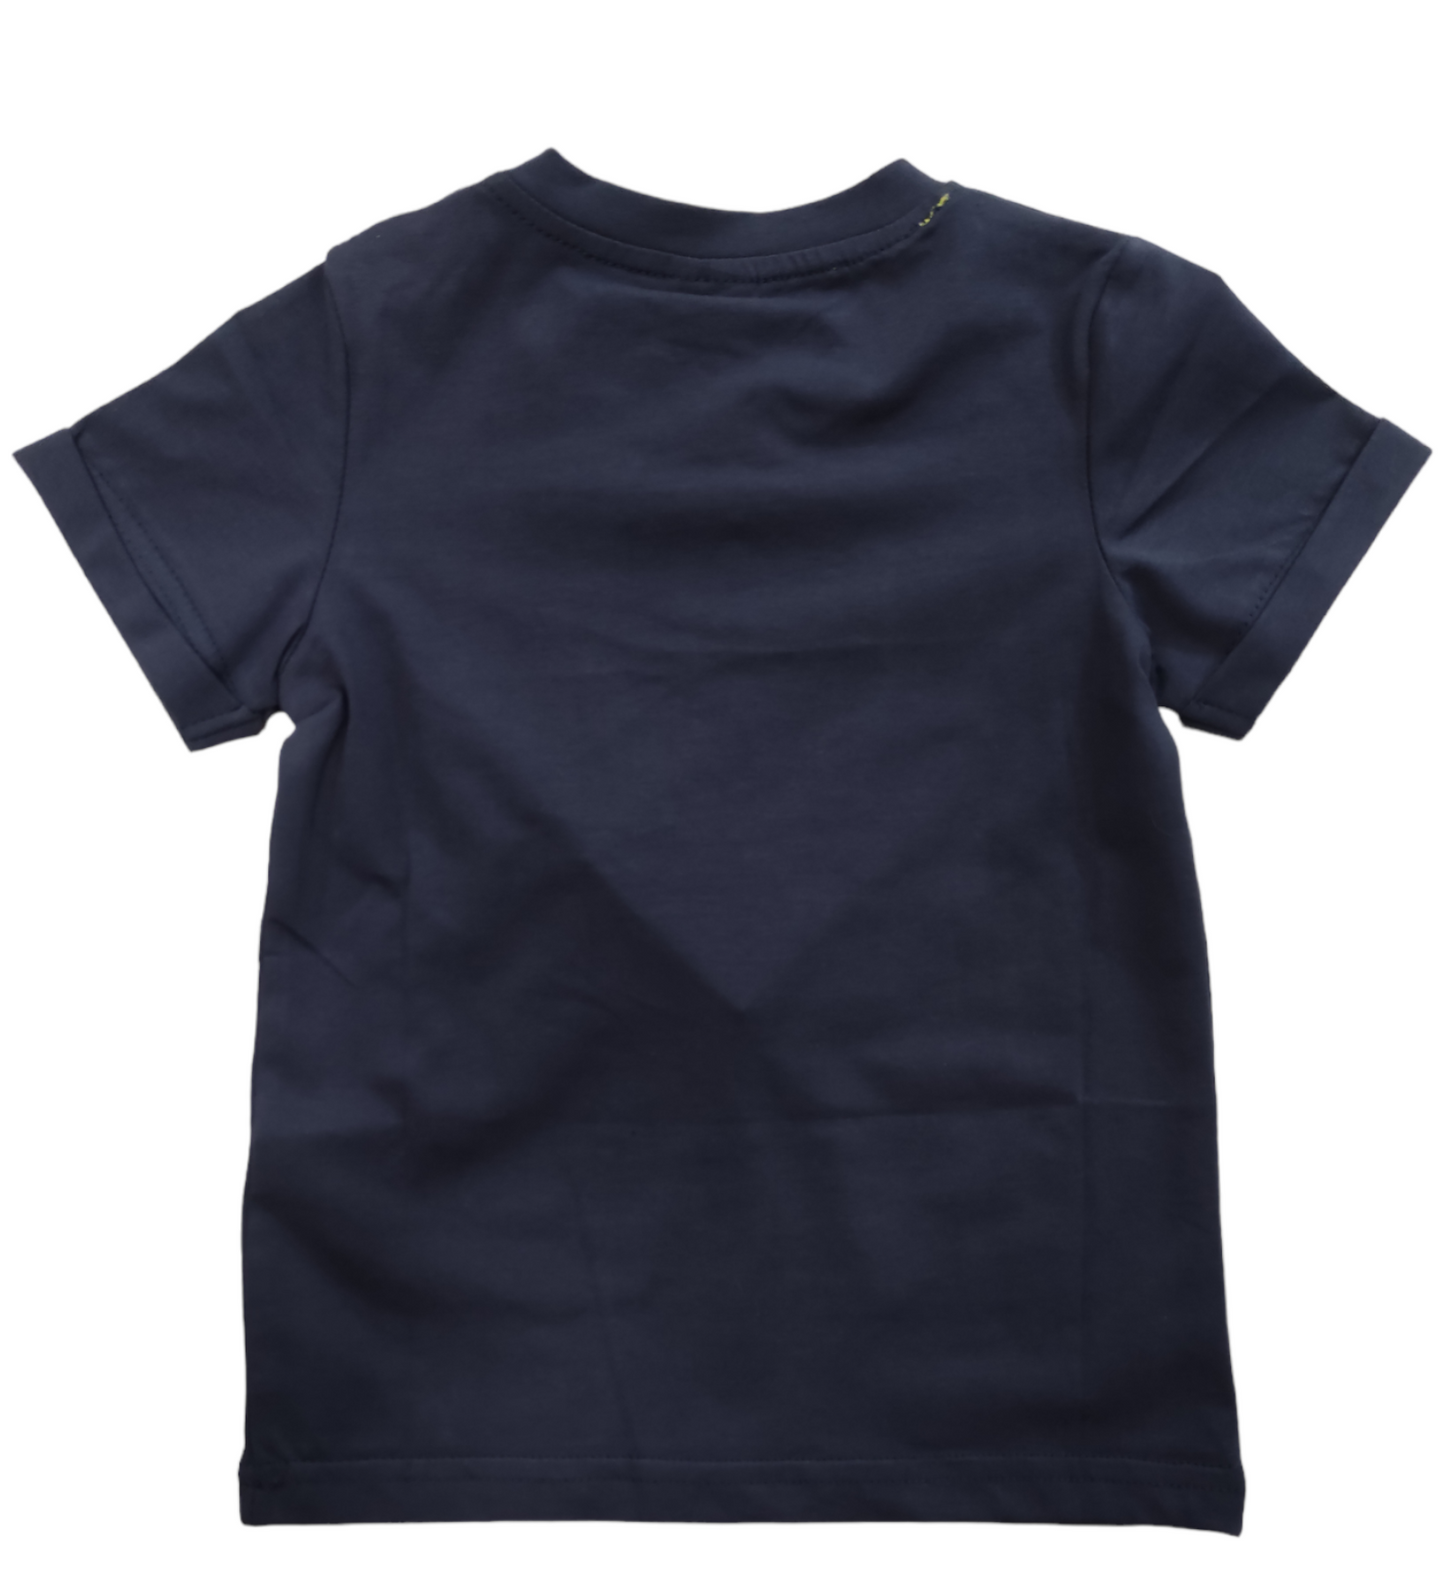 T-Shirt in Jersey di Cotone Manica Corta Stampa Cagnolino Bambino 6-36 Mesi